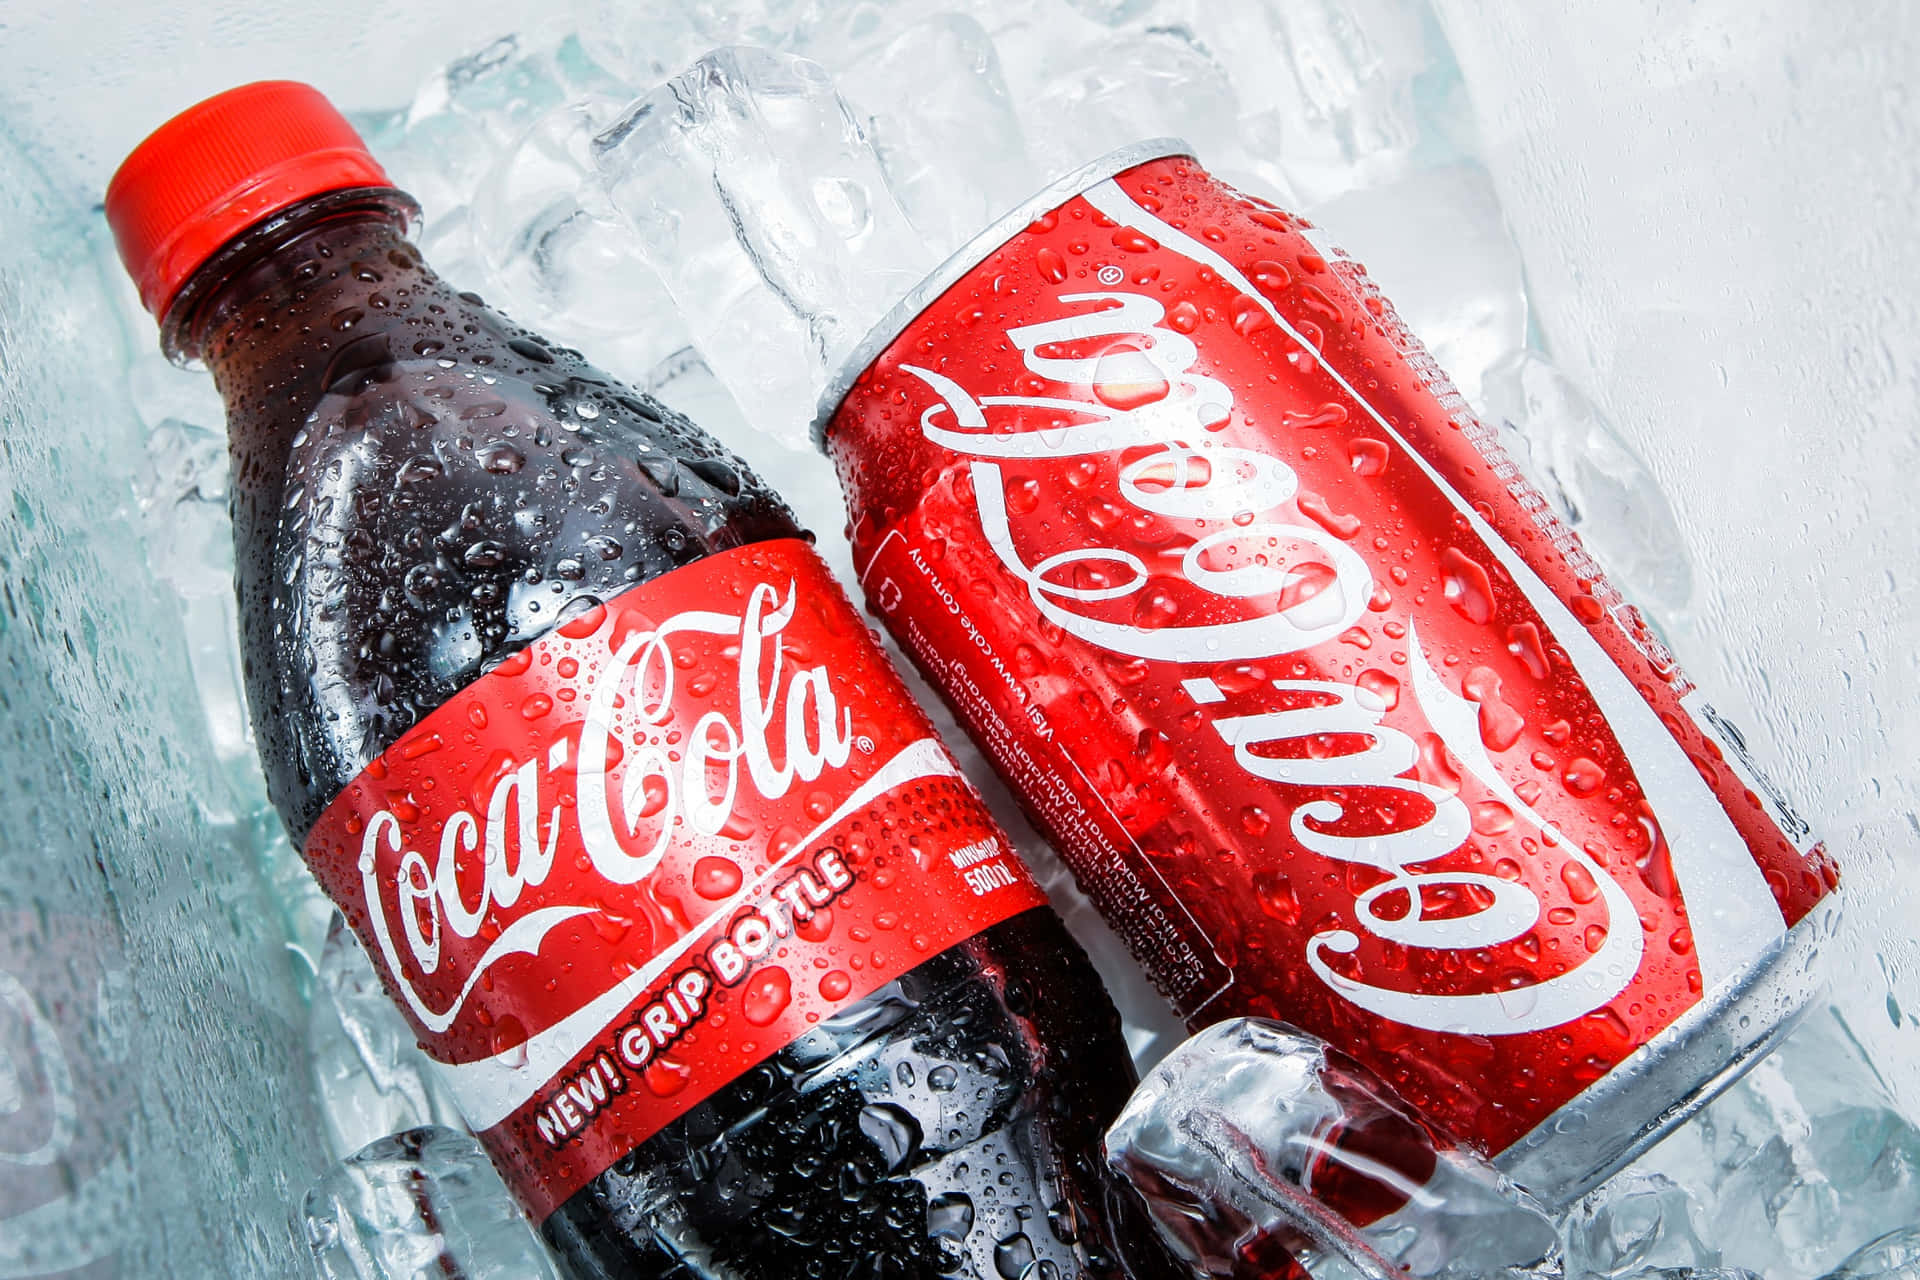 Enjoy an ice cold Coca-Cola